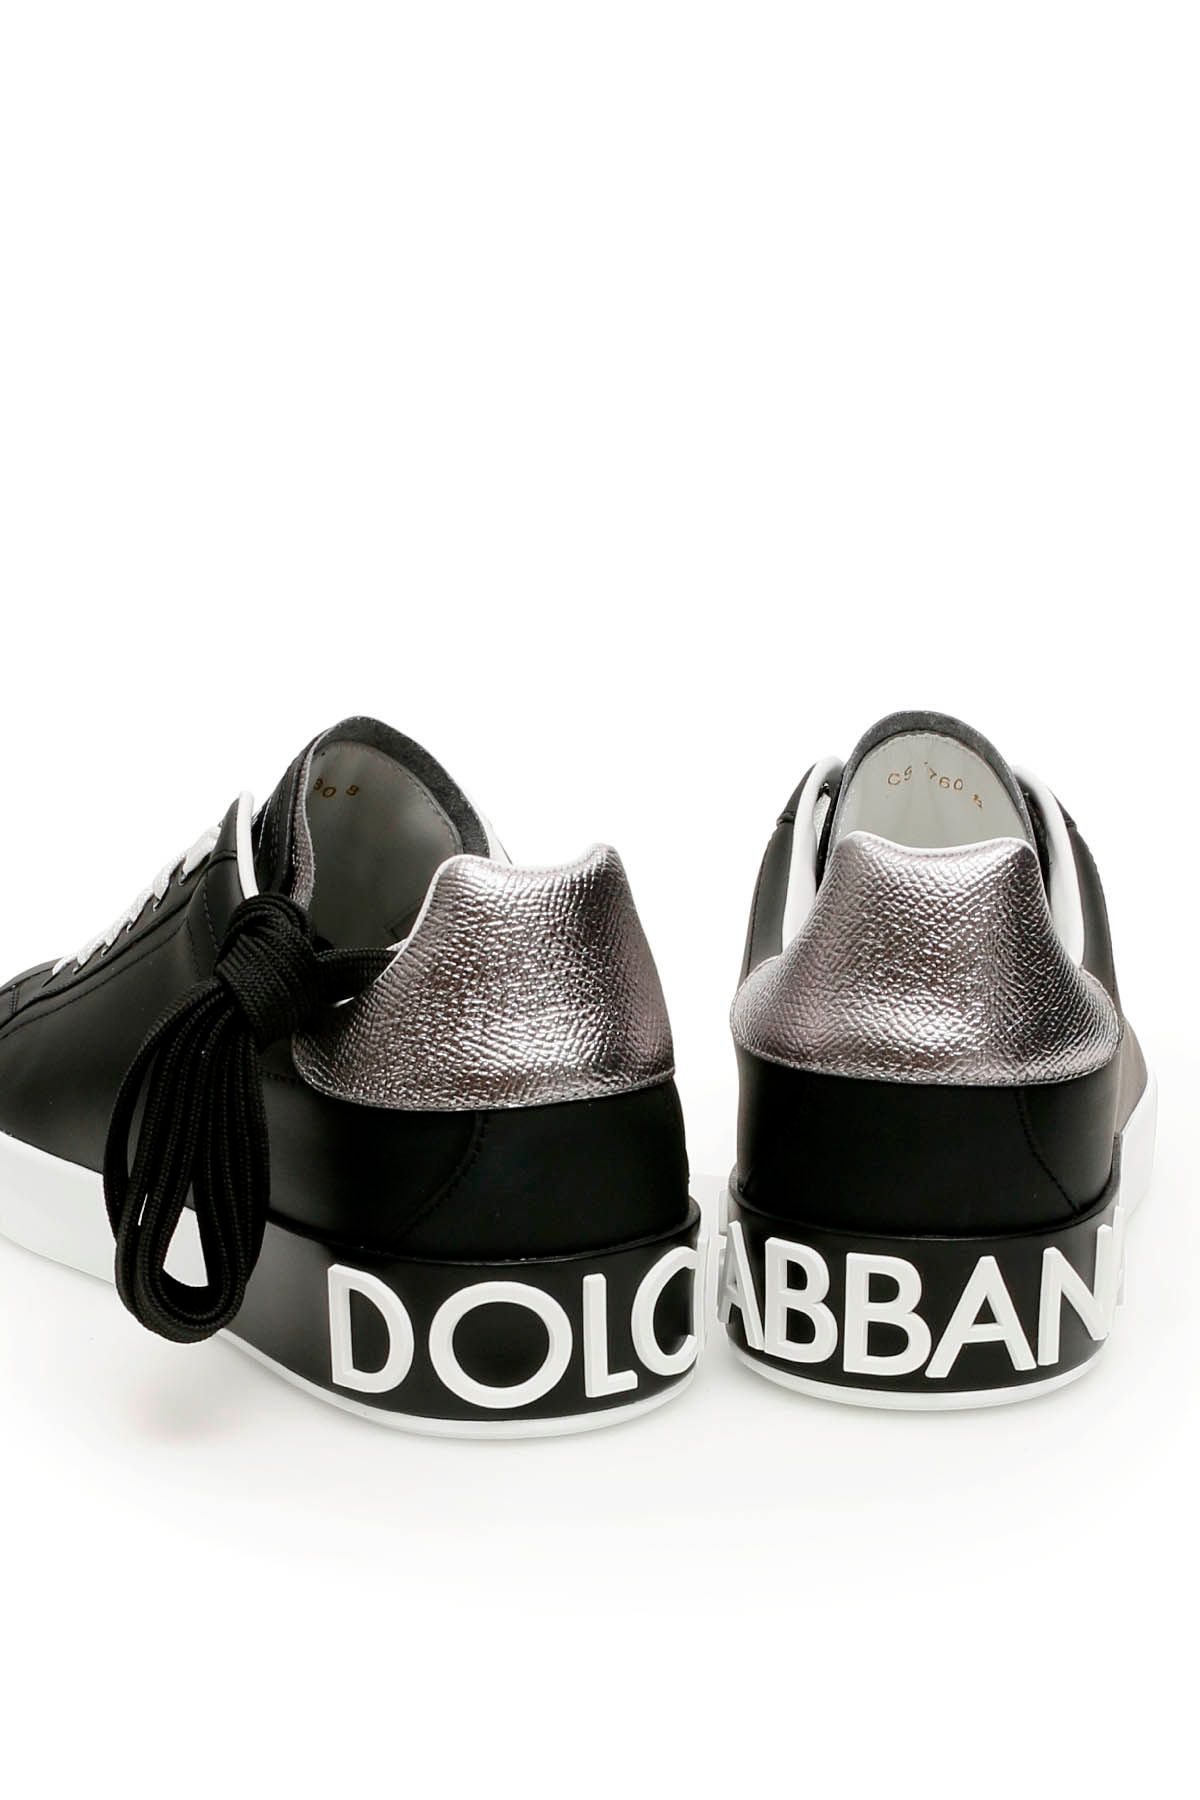 Shop Dolce & Gabbana Portofino Leather Sneakers In Silver,black